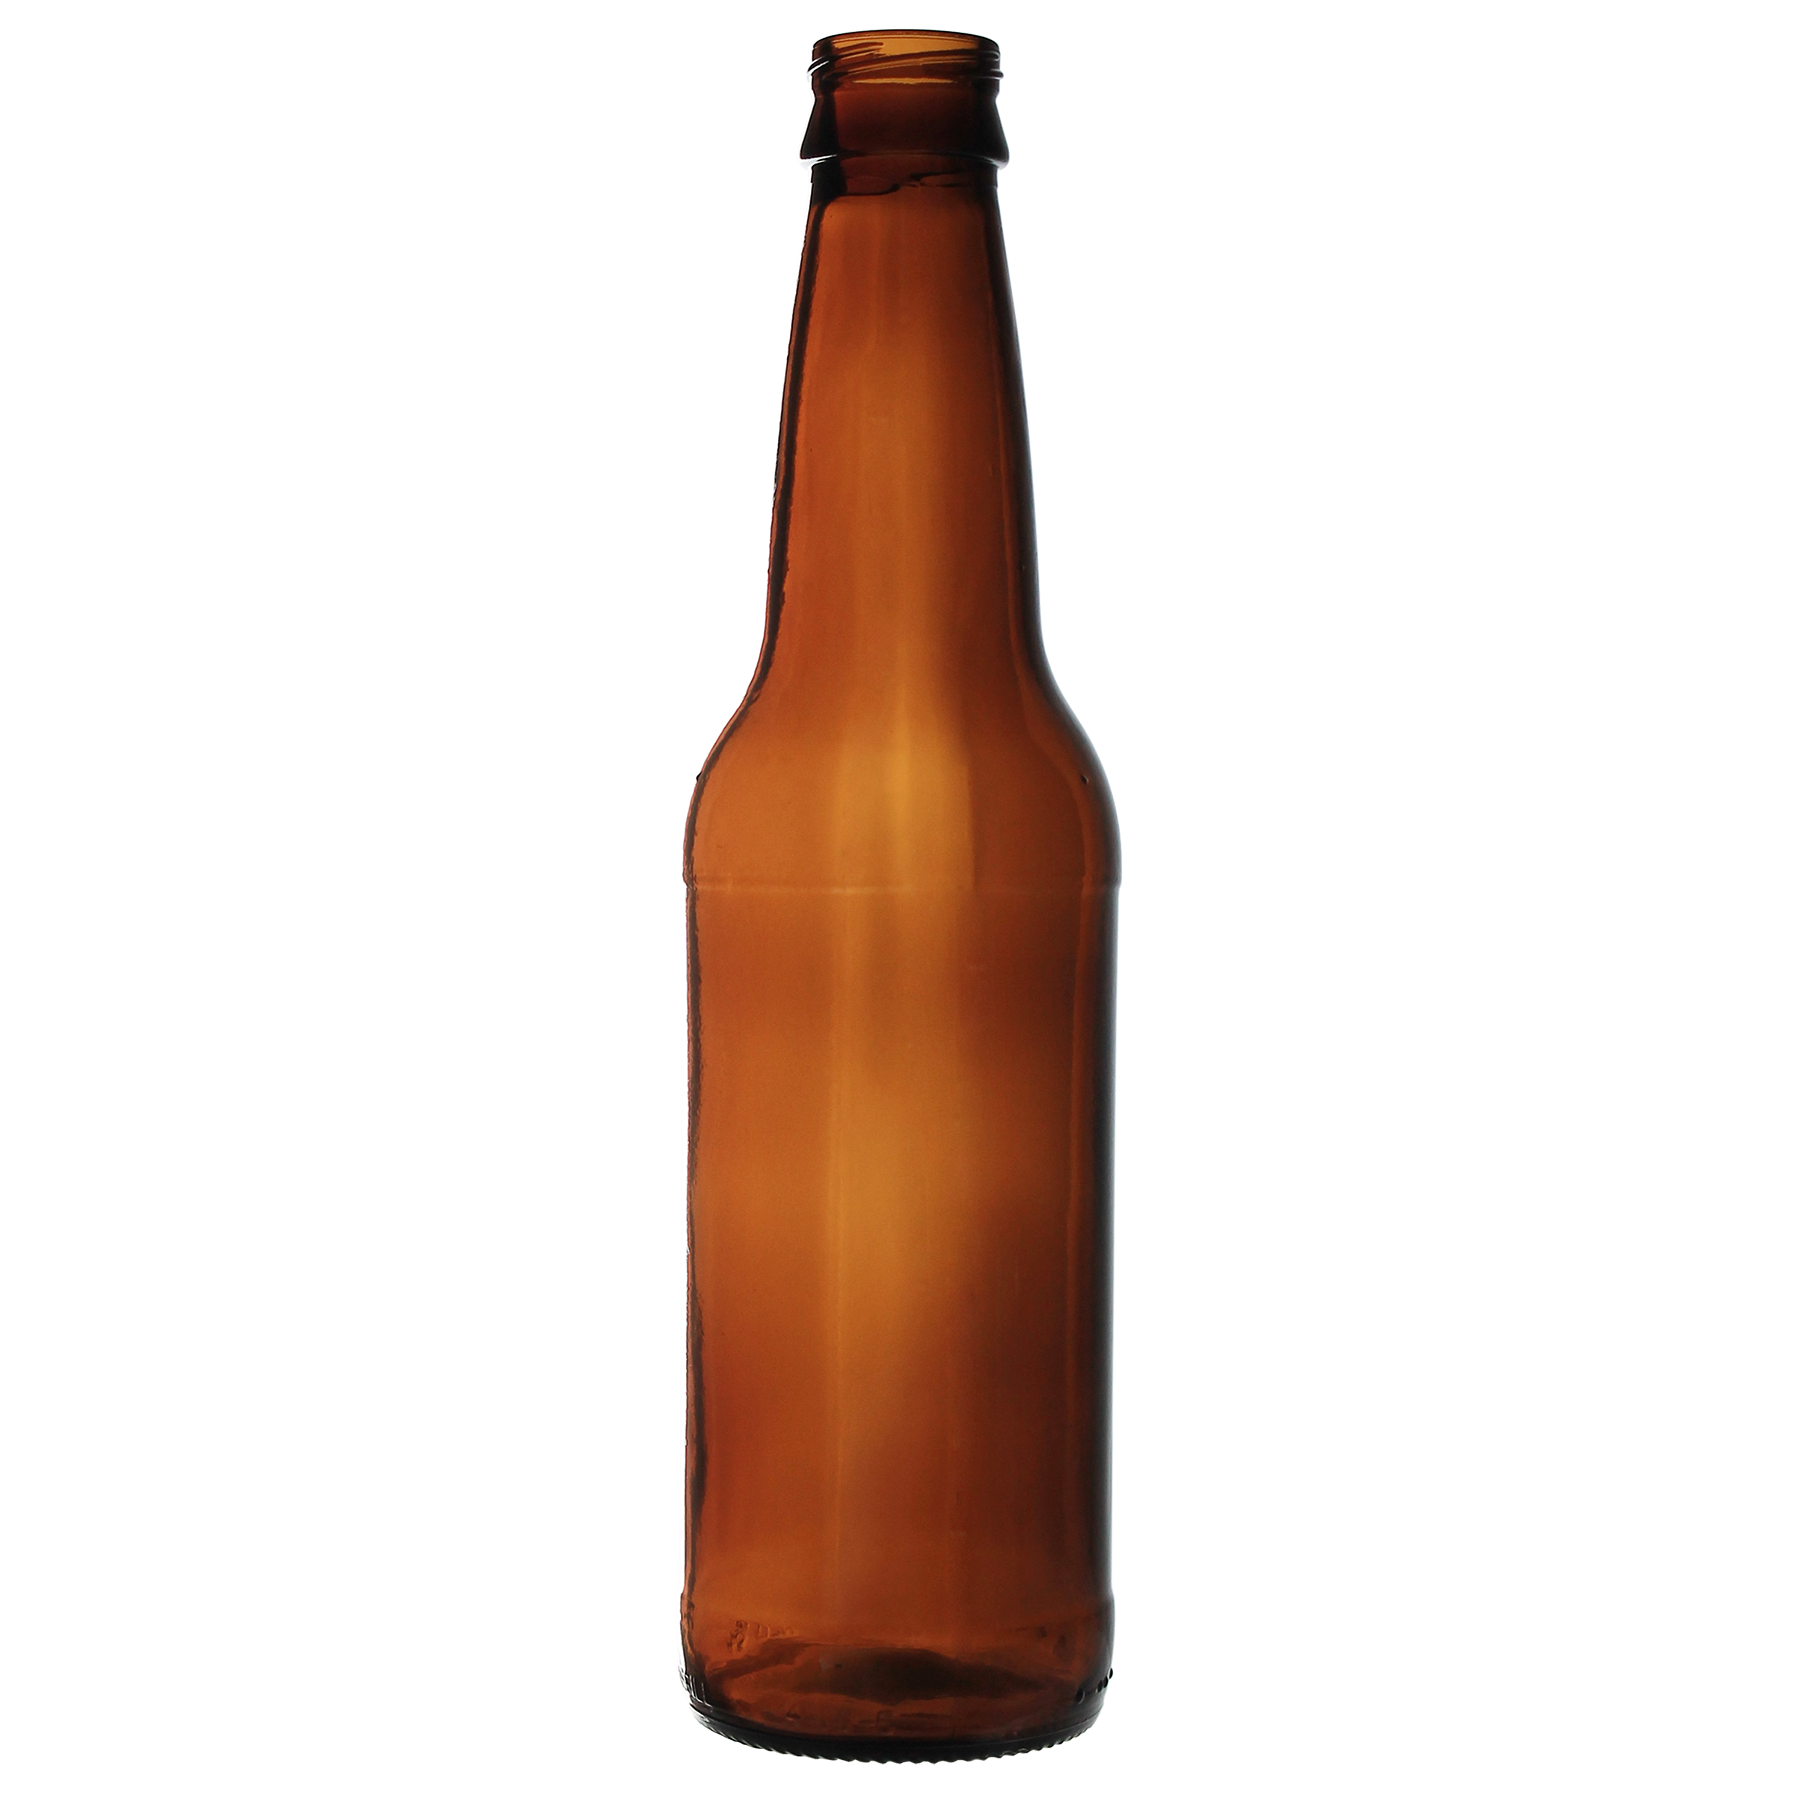  oz amber long. Beer bottle png